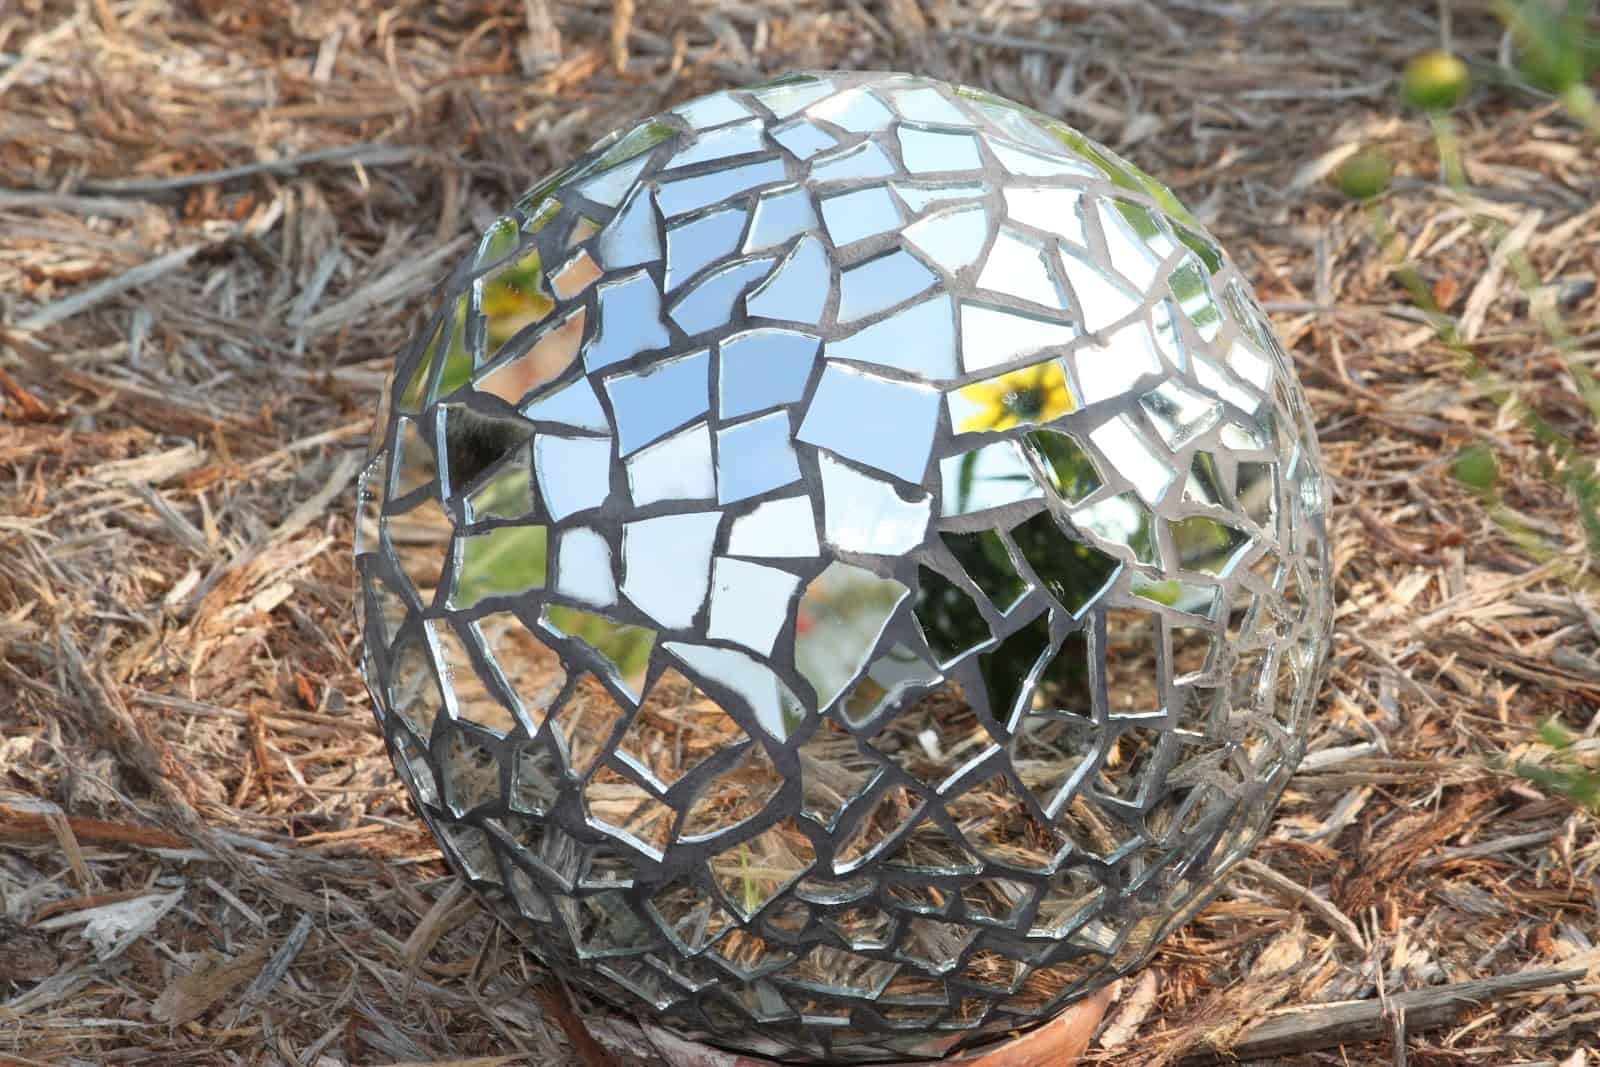 Disco ball inspired mirrored garden sphere